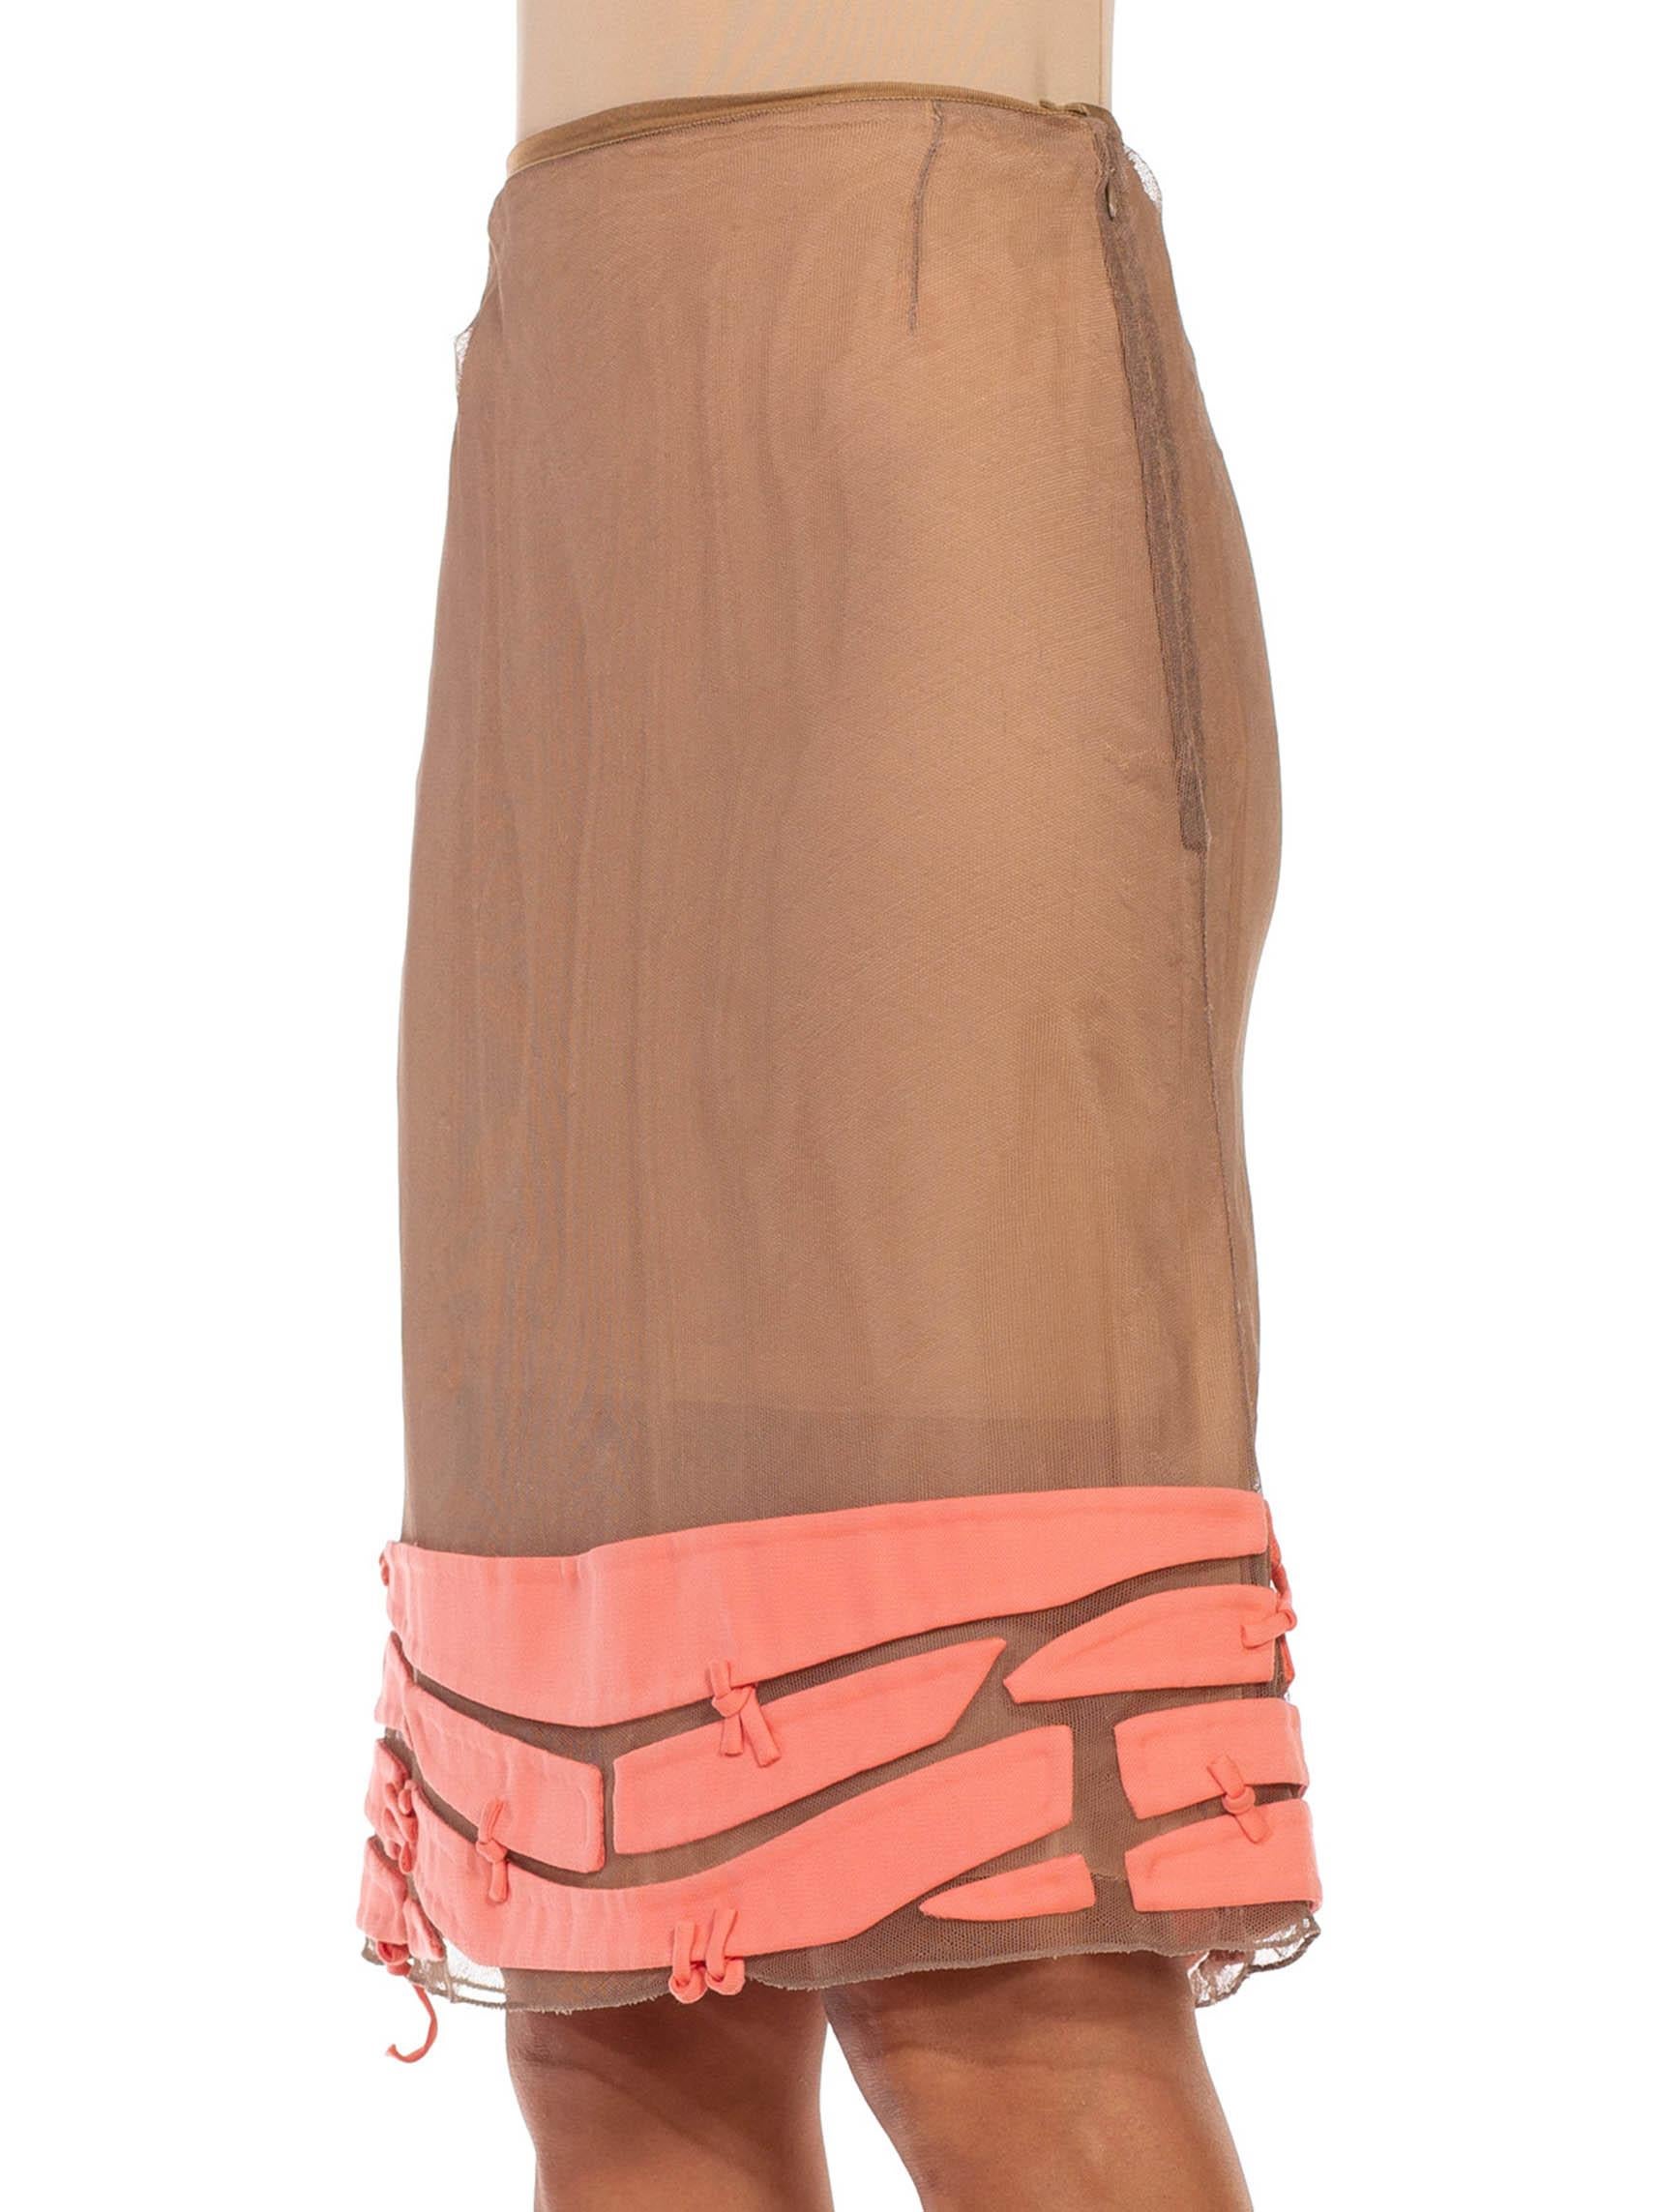 Women's 2000S RALPH RUCCI Ecru Silk Net Skirt With Signature Appliqué Hem For Sale